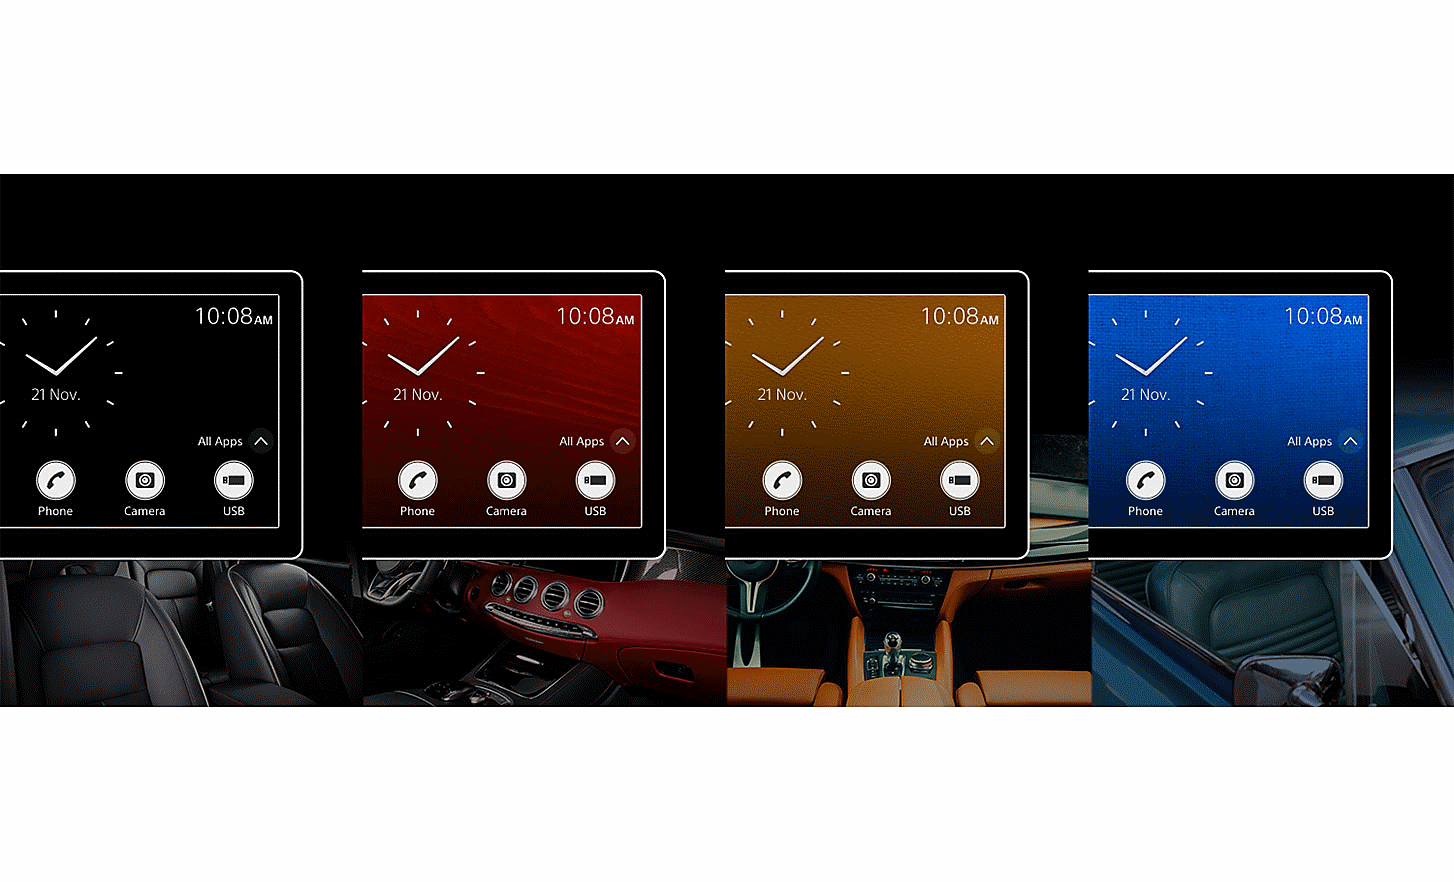 Četiri uređaja XAV-AX4050, svaki sa satovima i obojenim pozadinama na zaslonu iznad slika unutrašnjosti automobila s odgovarajućim bojama